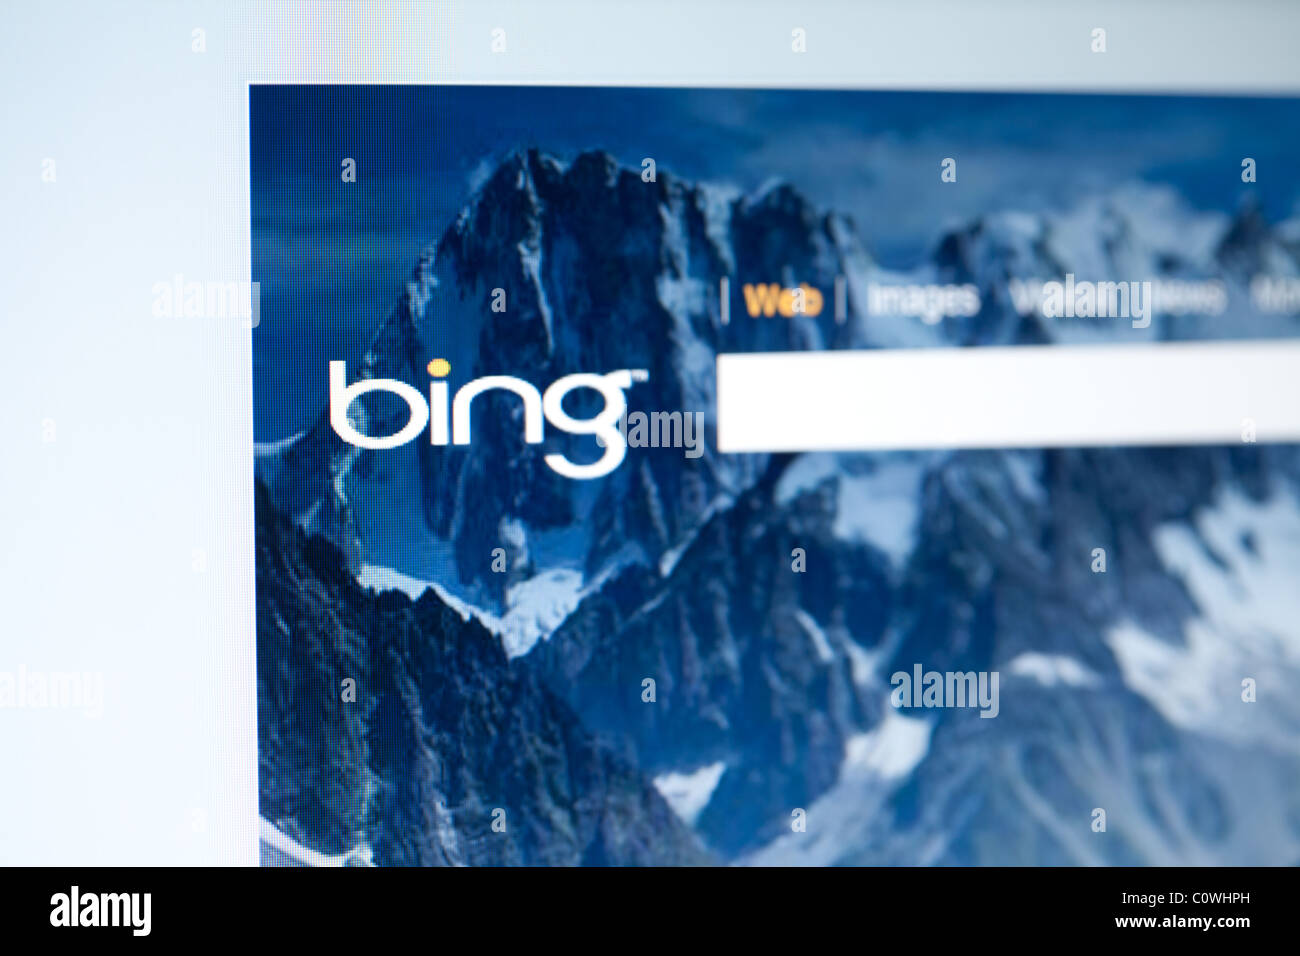 Icona di bing immagini e fotografie stock ad alta risoluzione - Alamy